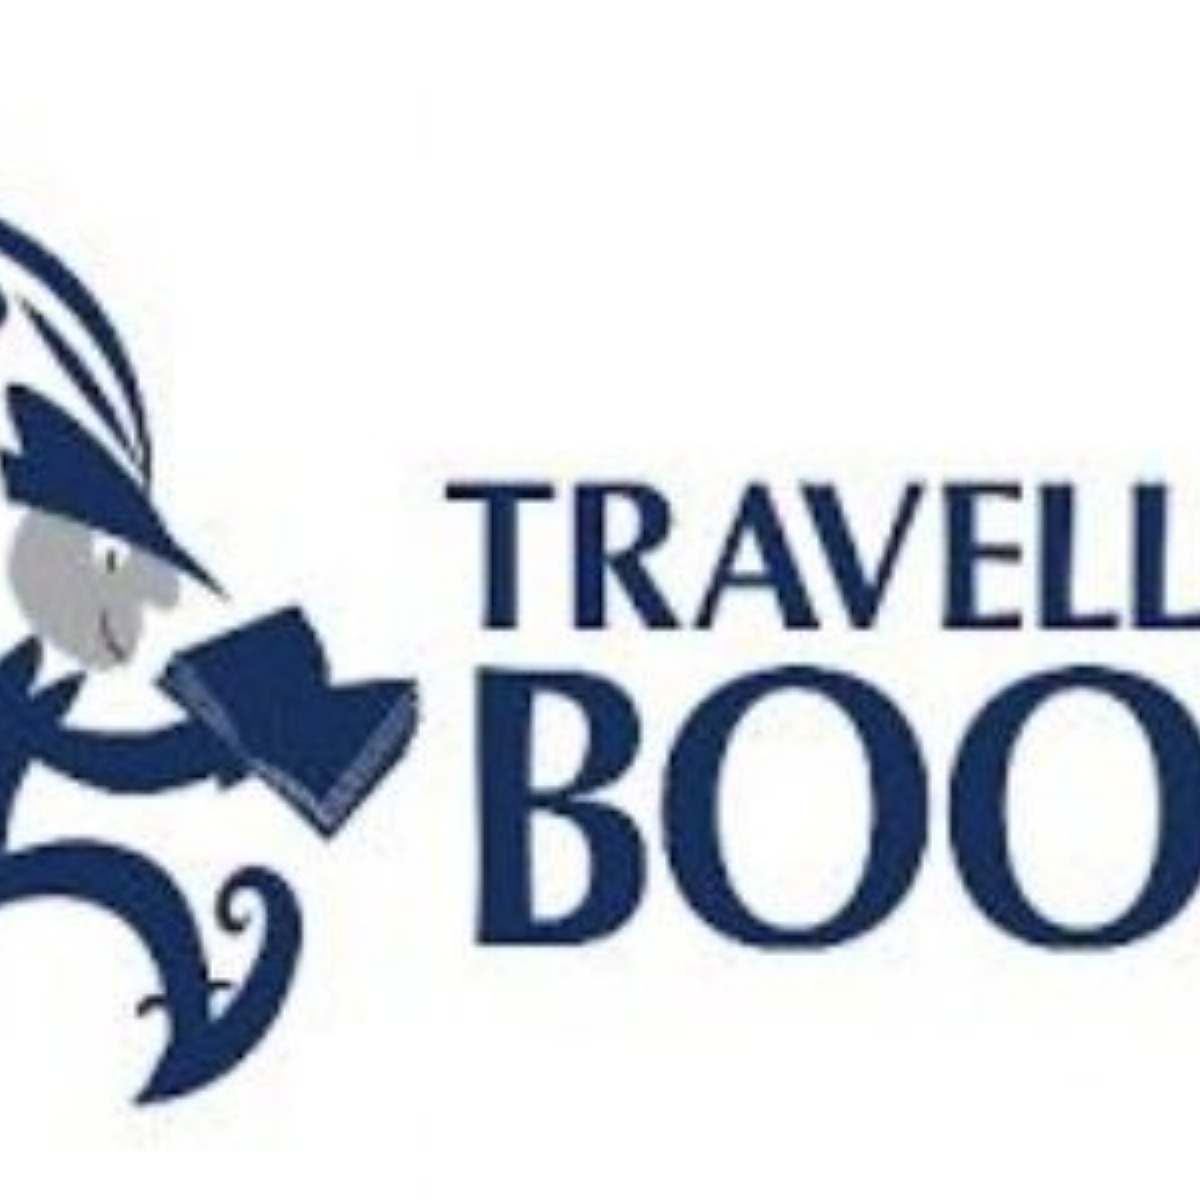 travelling book fair logo